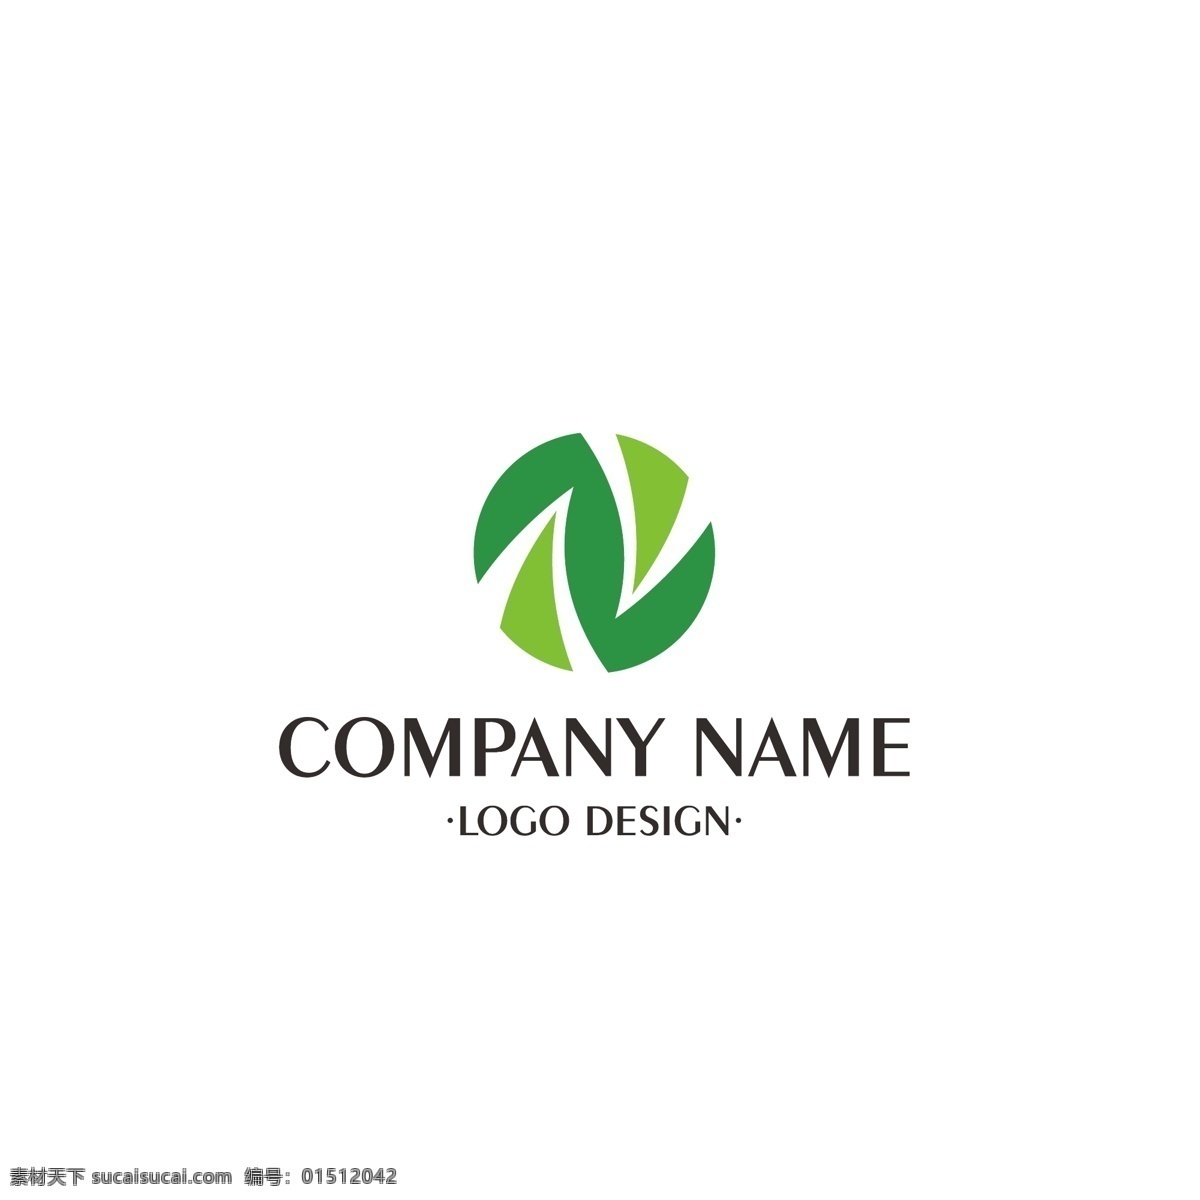 绿色 大气 logo 茶叶 叶子 标志 企业 公司